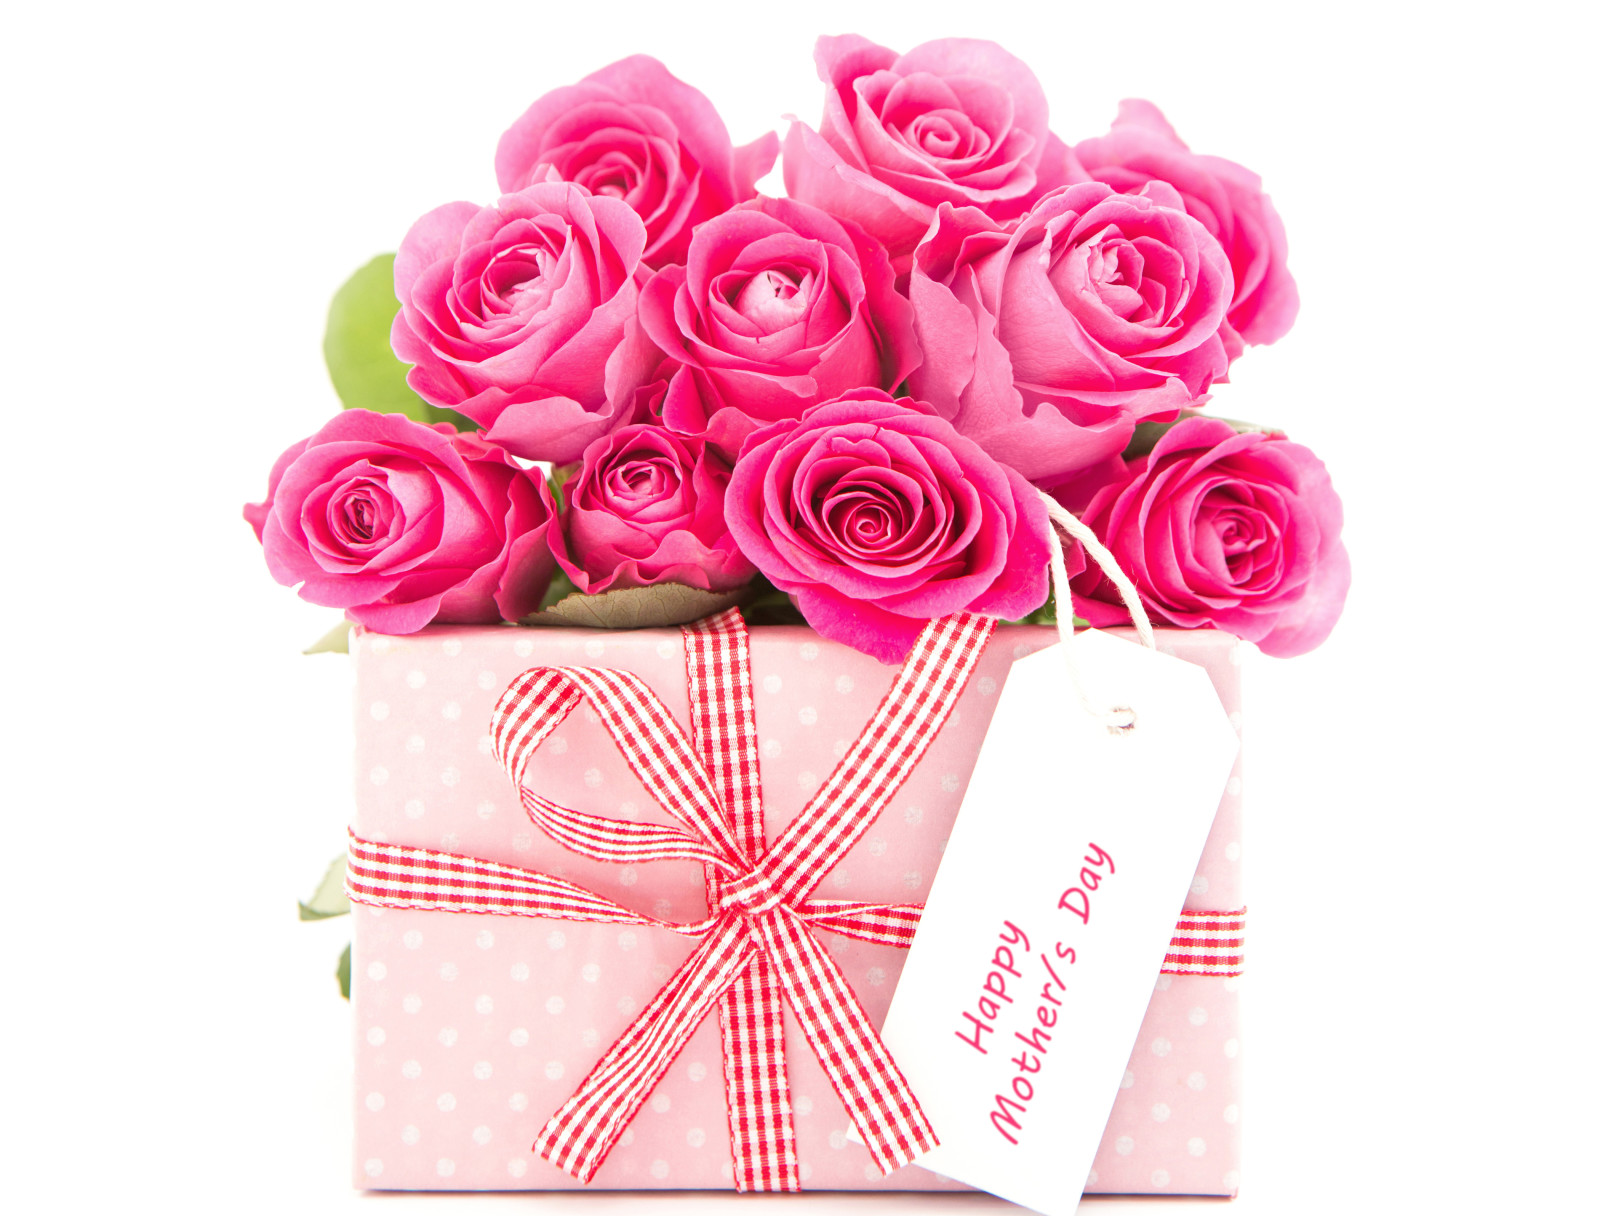 quà tặng, hoa hồng, cây cung, 08 Tháng 3, bó hoa